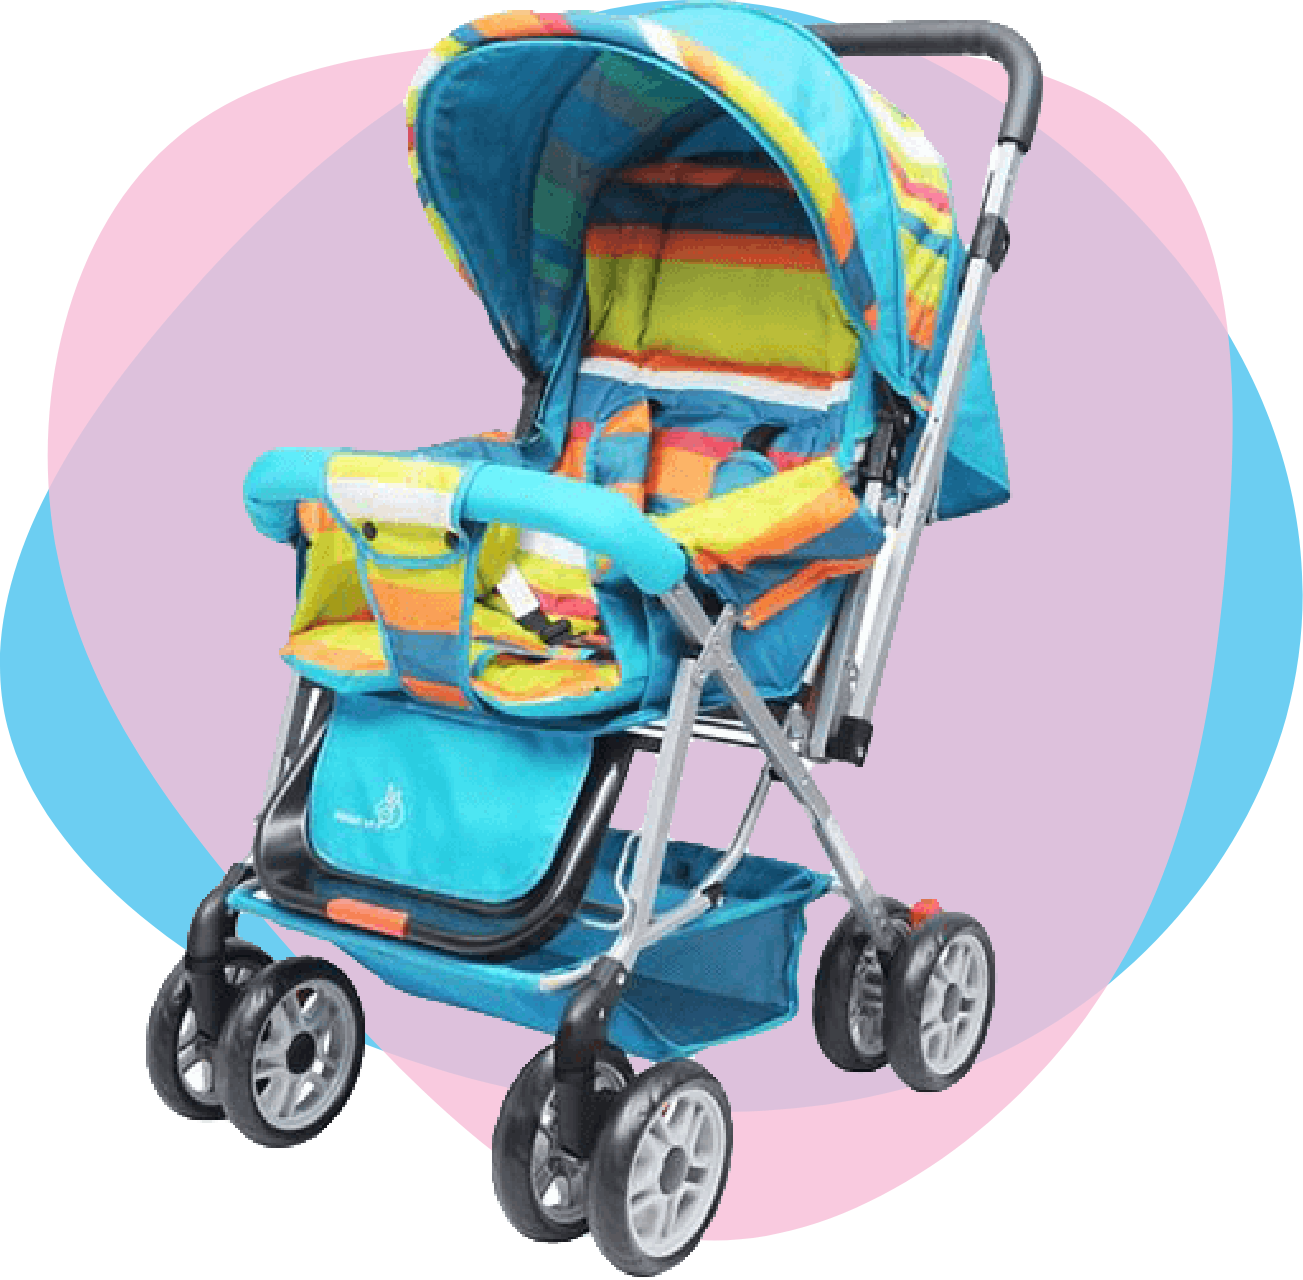 Baby Gear Slider stroller